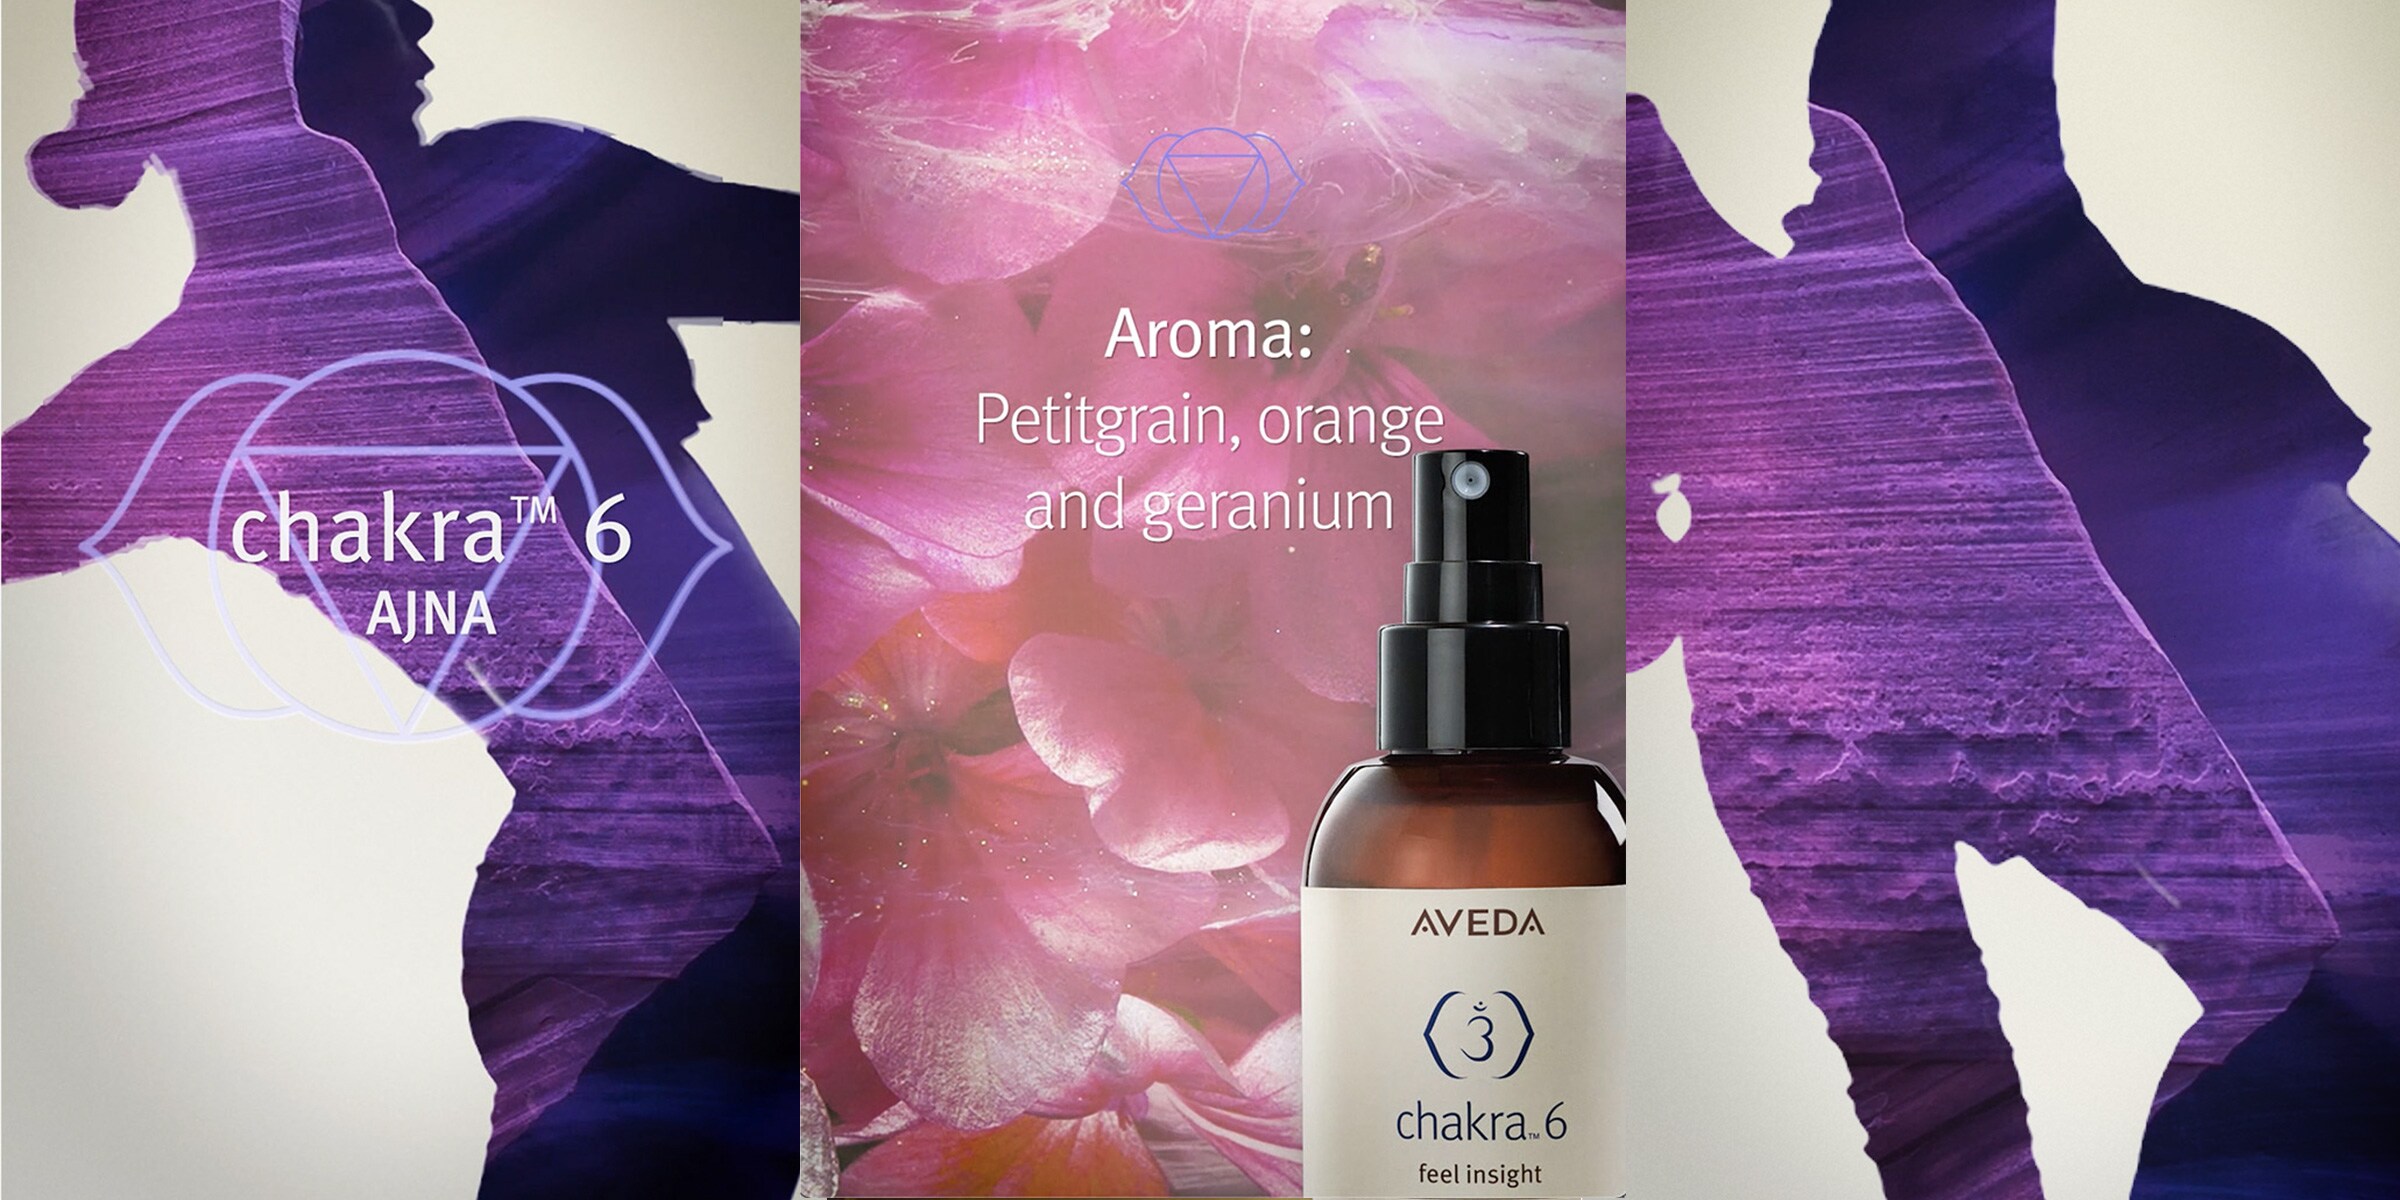 Das Aroma von Chakra 6 beinhaltet Petitgrain, Orange und Geranie